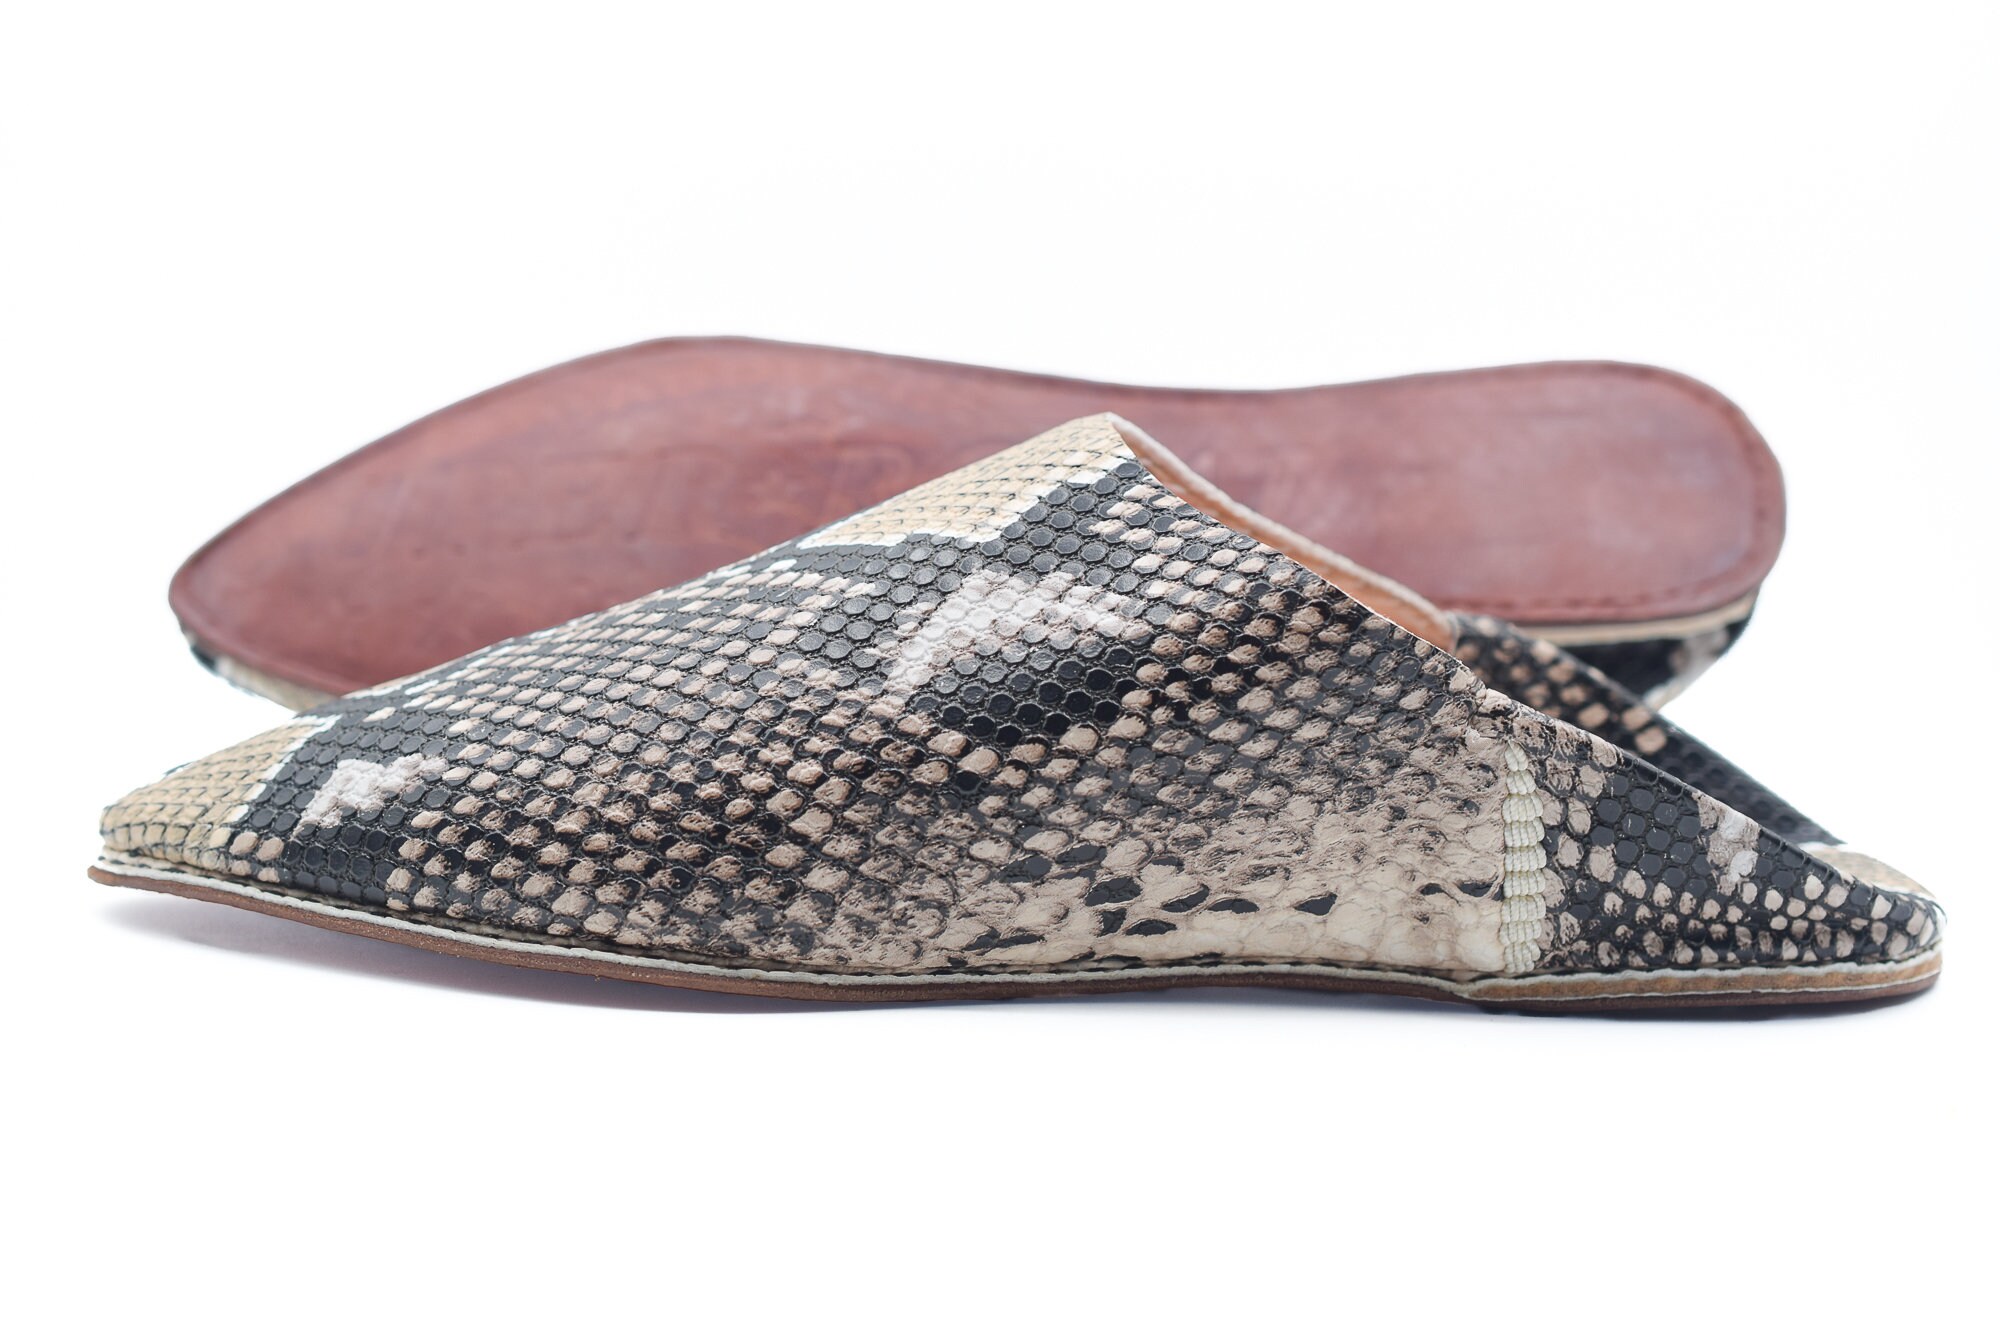 Moroccan snake skin slipper for men python designer slippers | Etsy